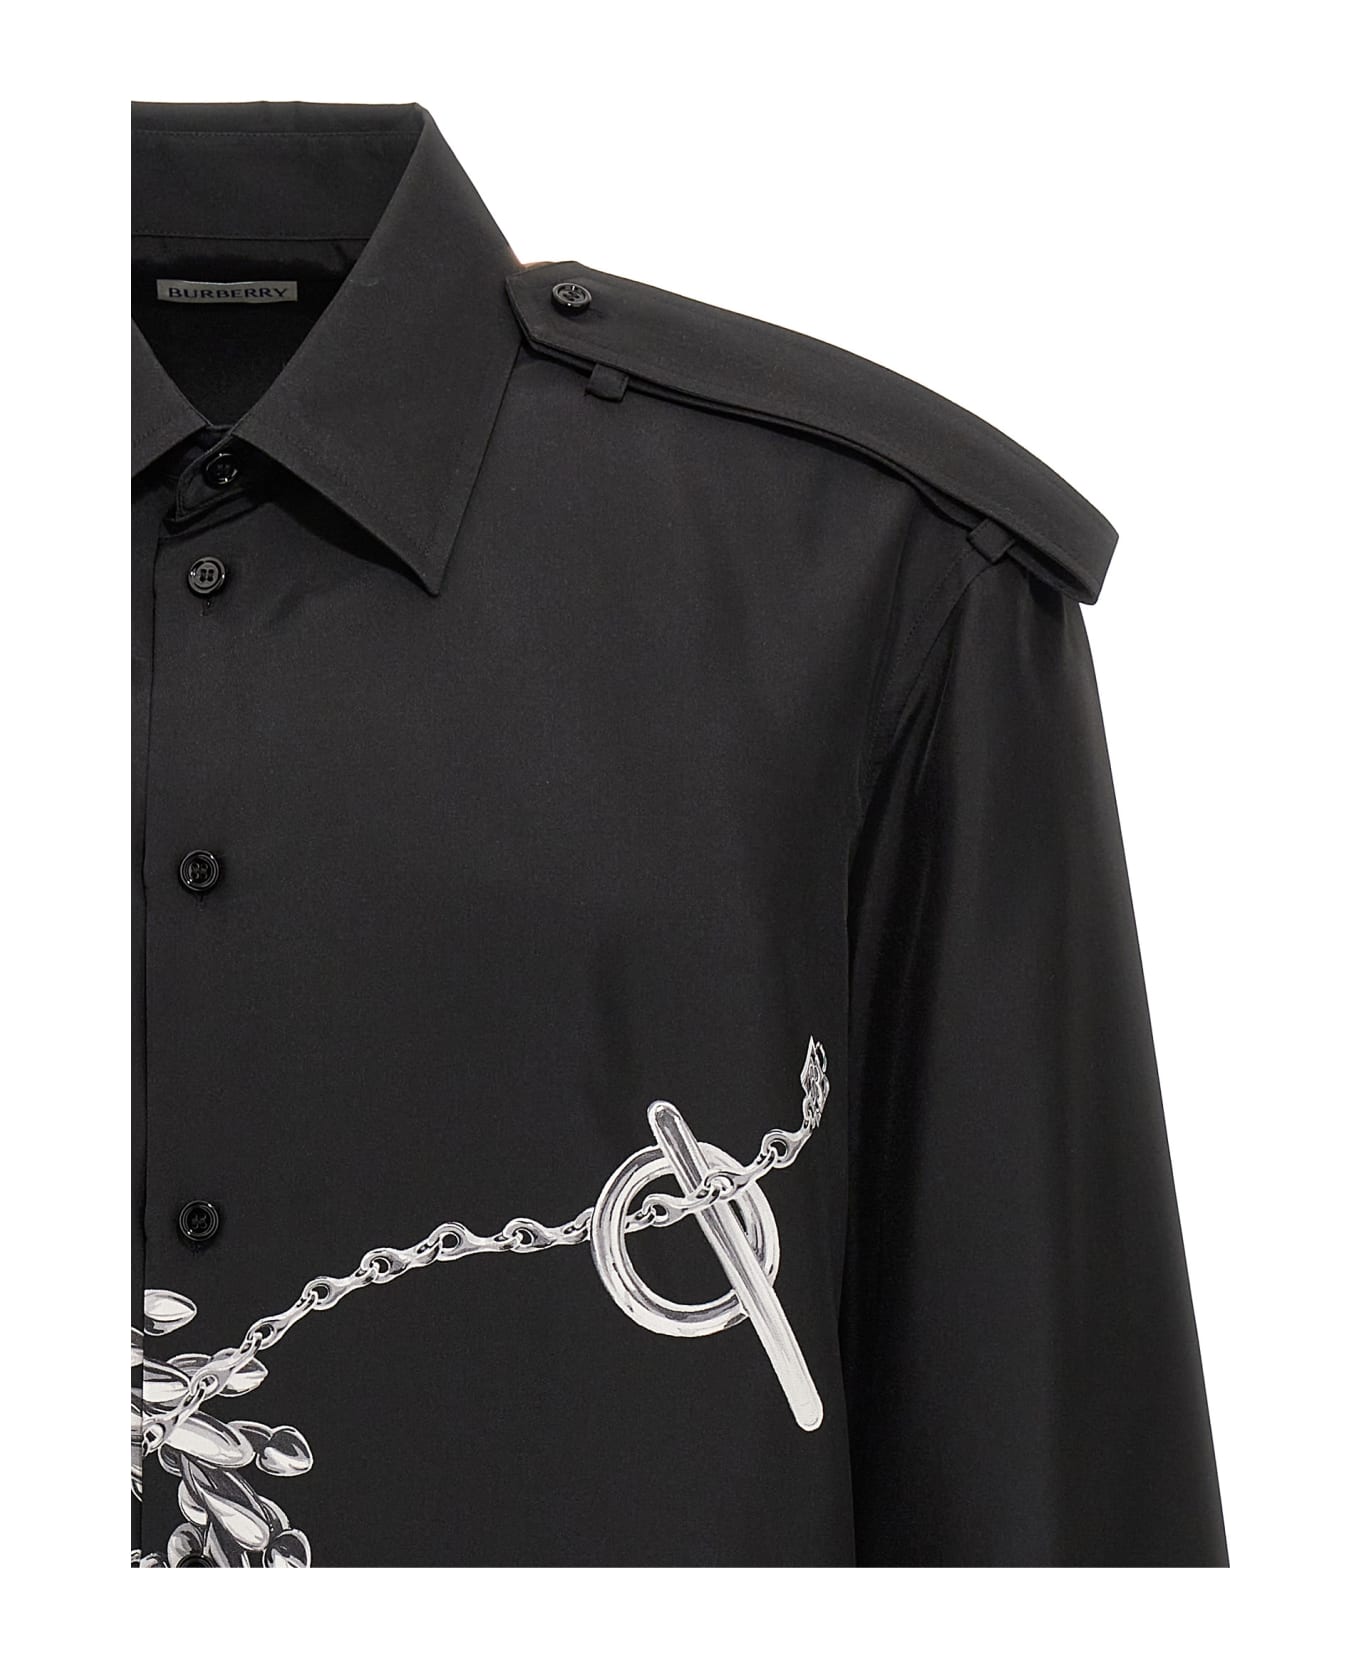 Burberry 'knight' Shirt - Black  